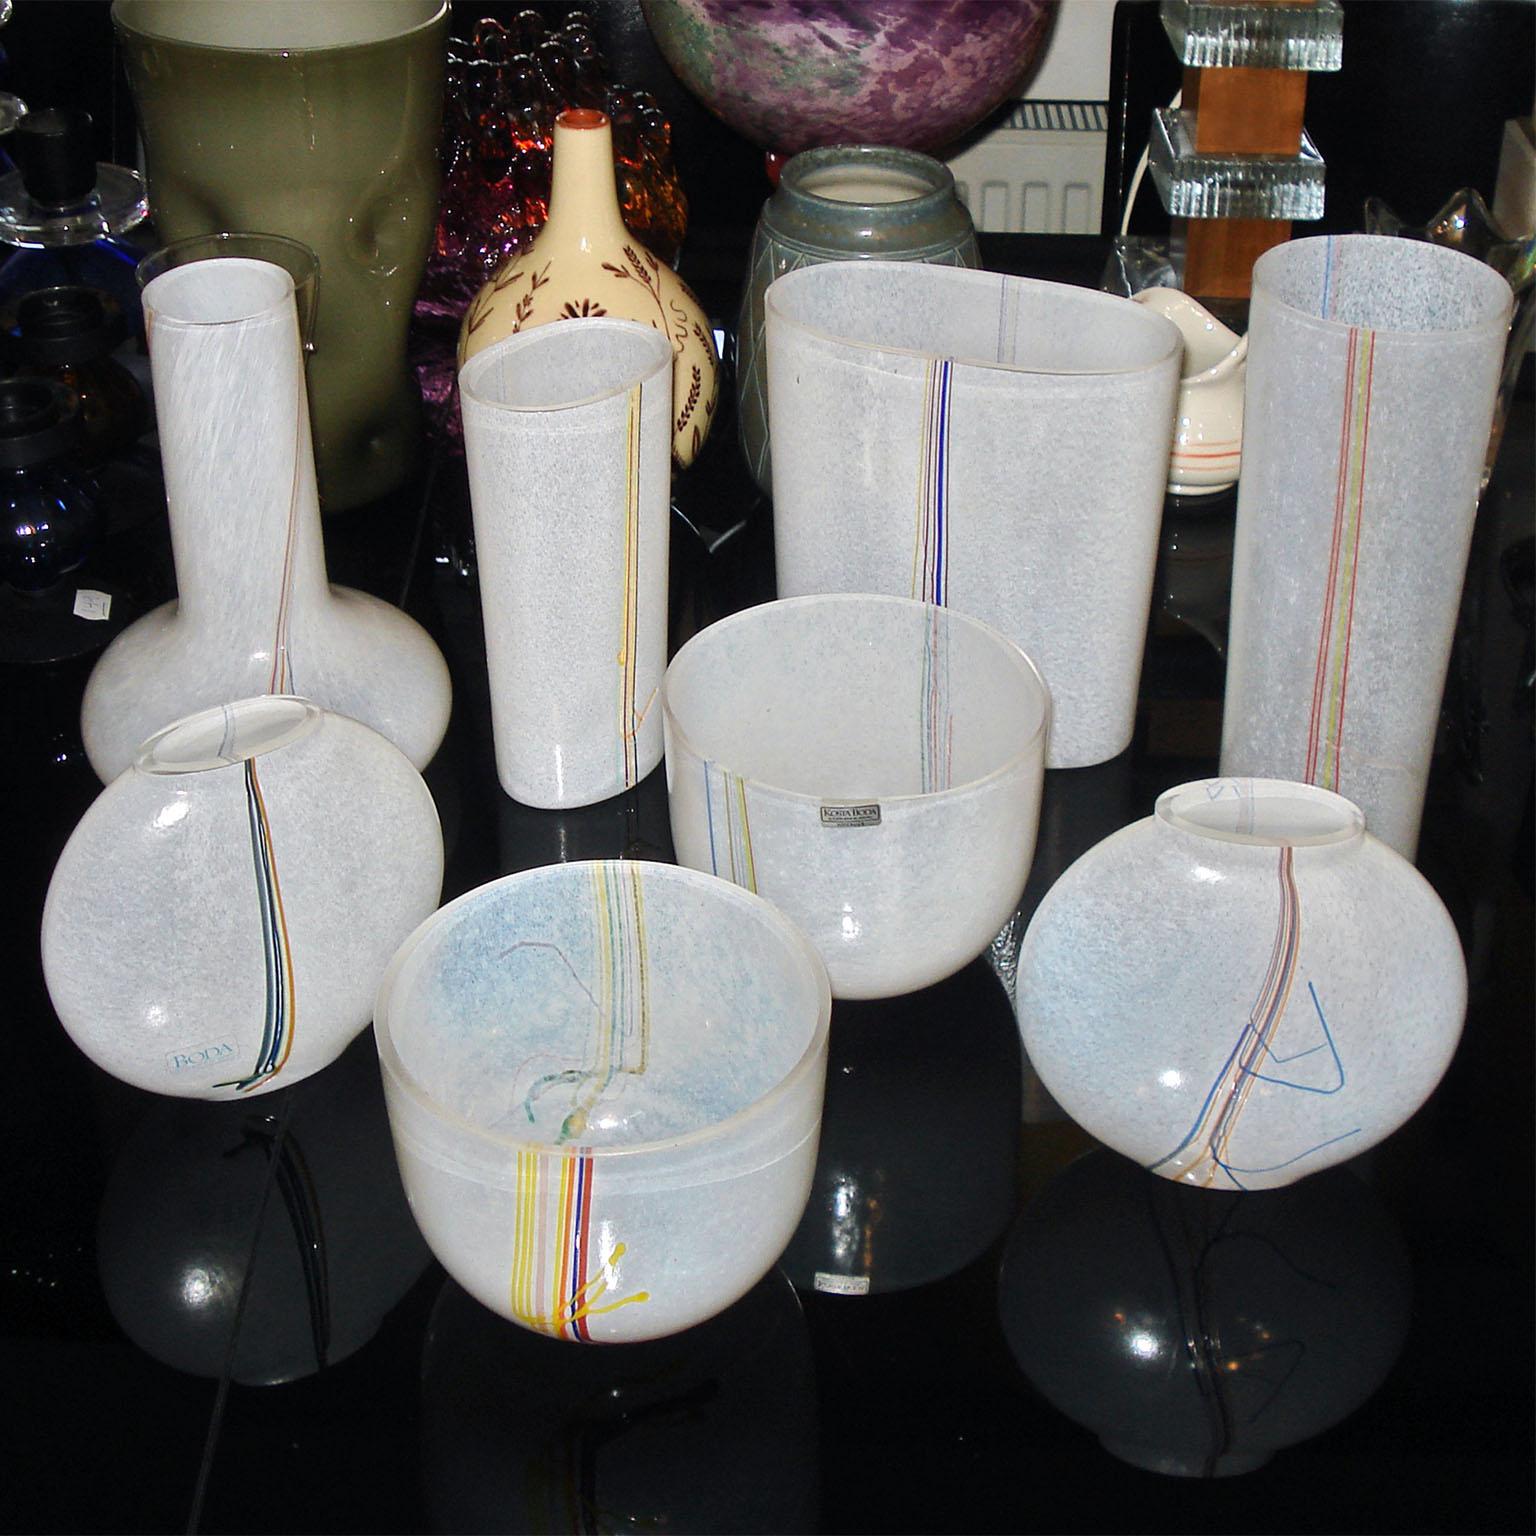 Un magnifique vase décoratif en verre fabriqué à la main avec des brins de verre multicolores sur les côtés, conçu et réalisé par Bertil Vallien pour Kosta Boda, Suède, années 1970. Excellent état.
Dimensions : 18 x 9,5 x 19,5 cm.
 